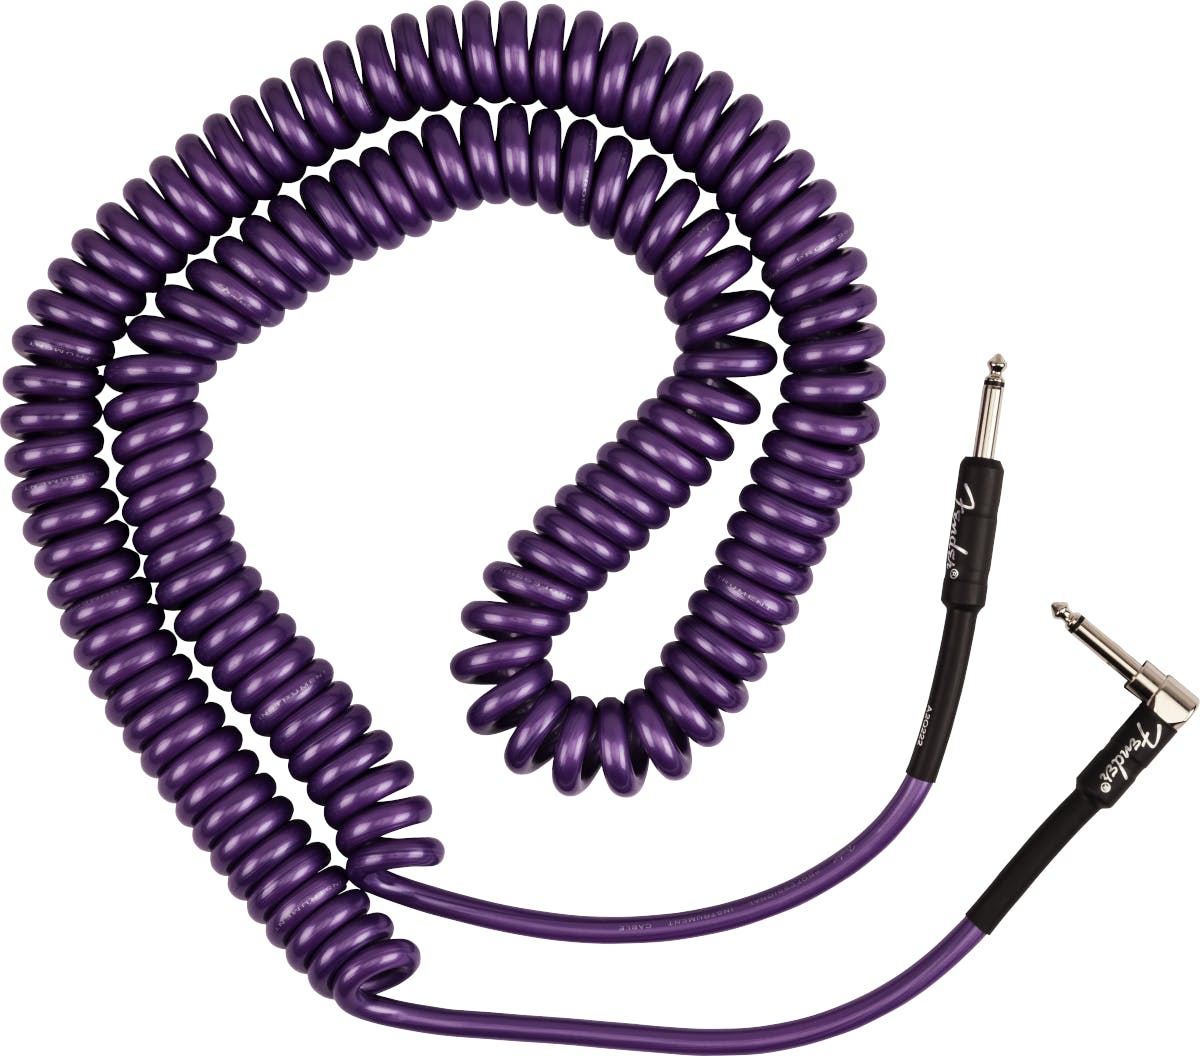 Fender J. Mascis Coil 30ft Guitar Cable, Purple